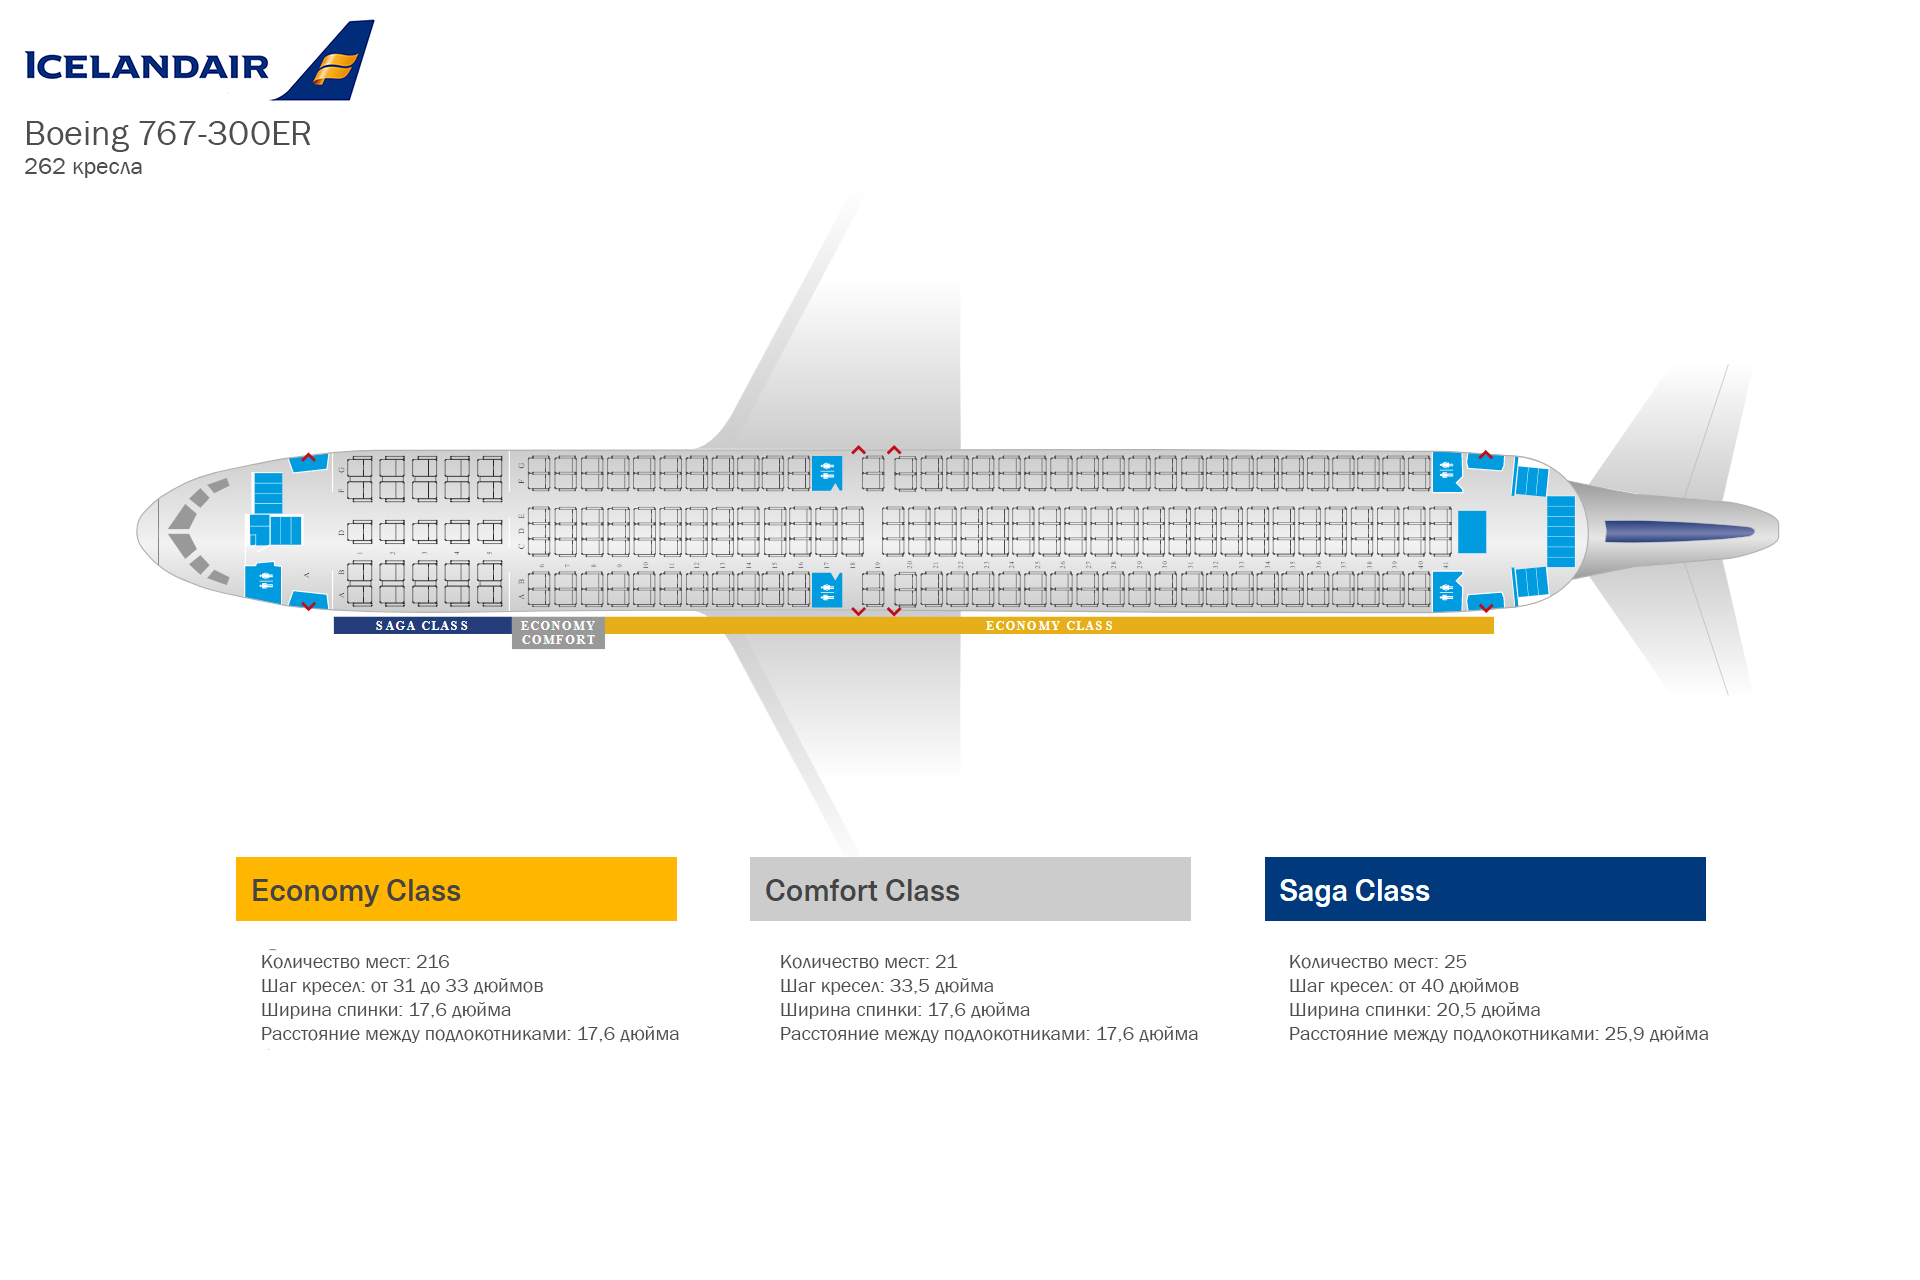 Схема салона и лучшие места boeing 737-800 utair